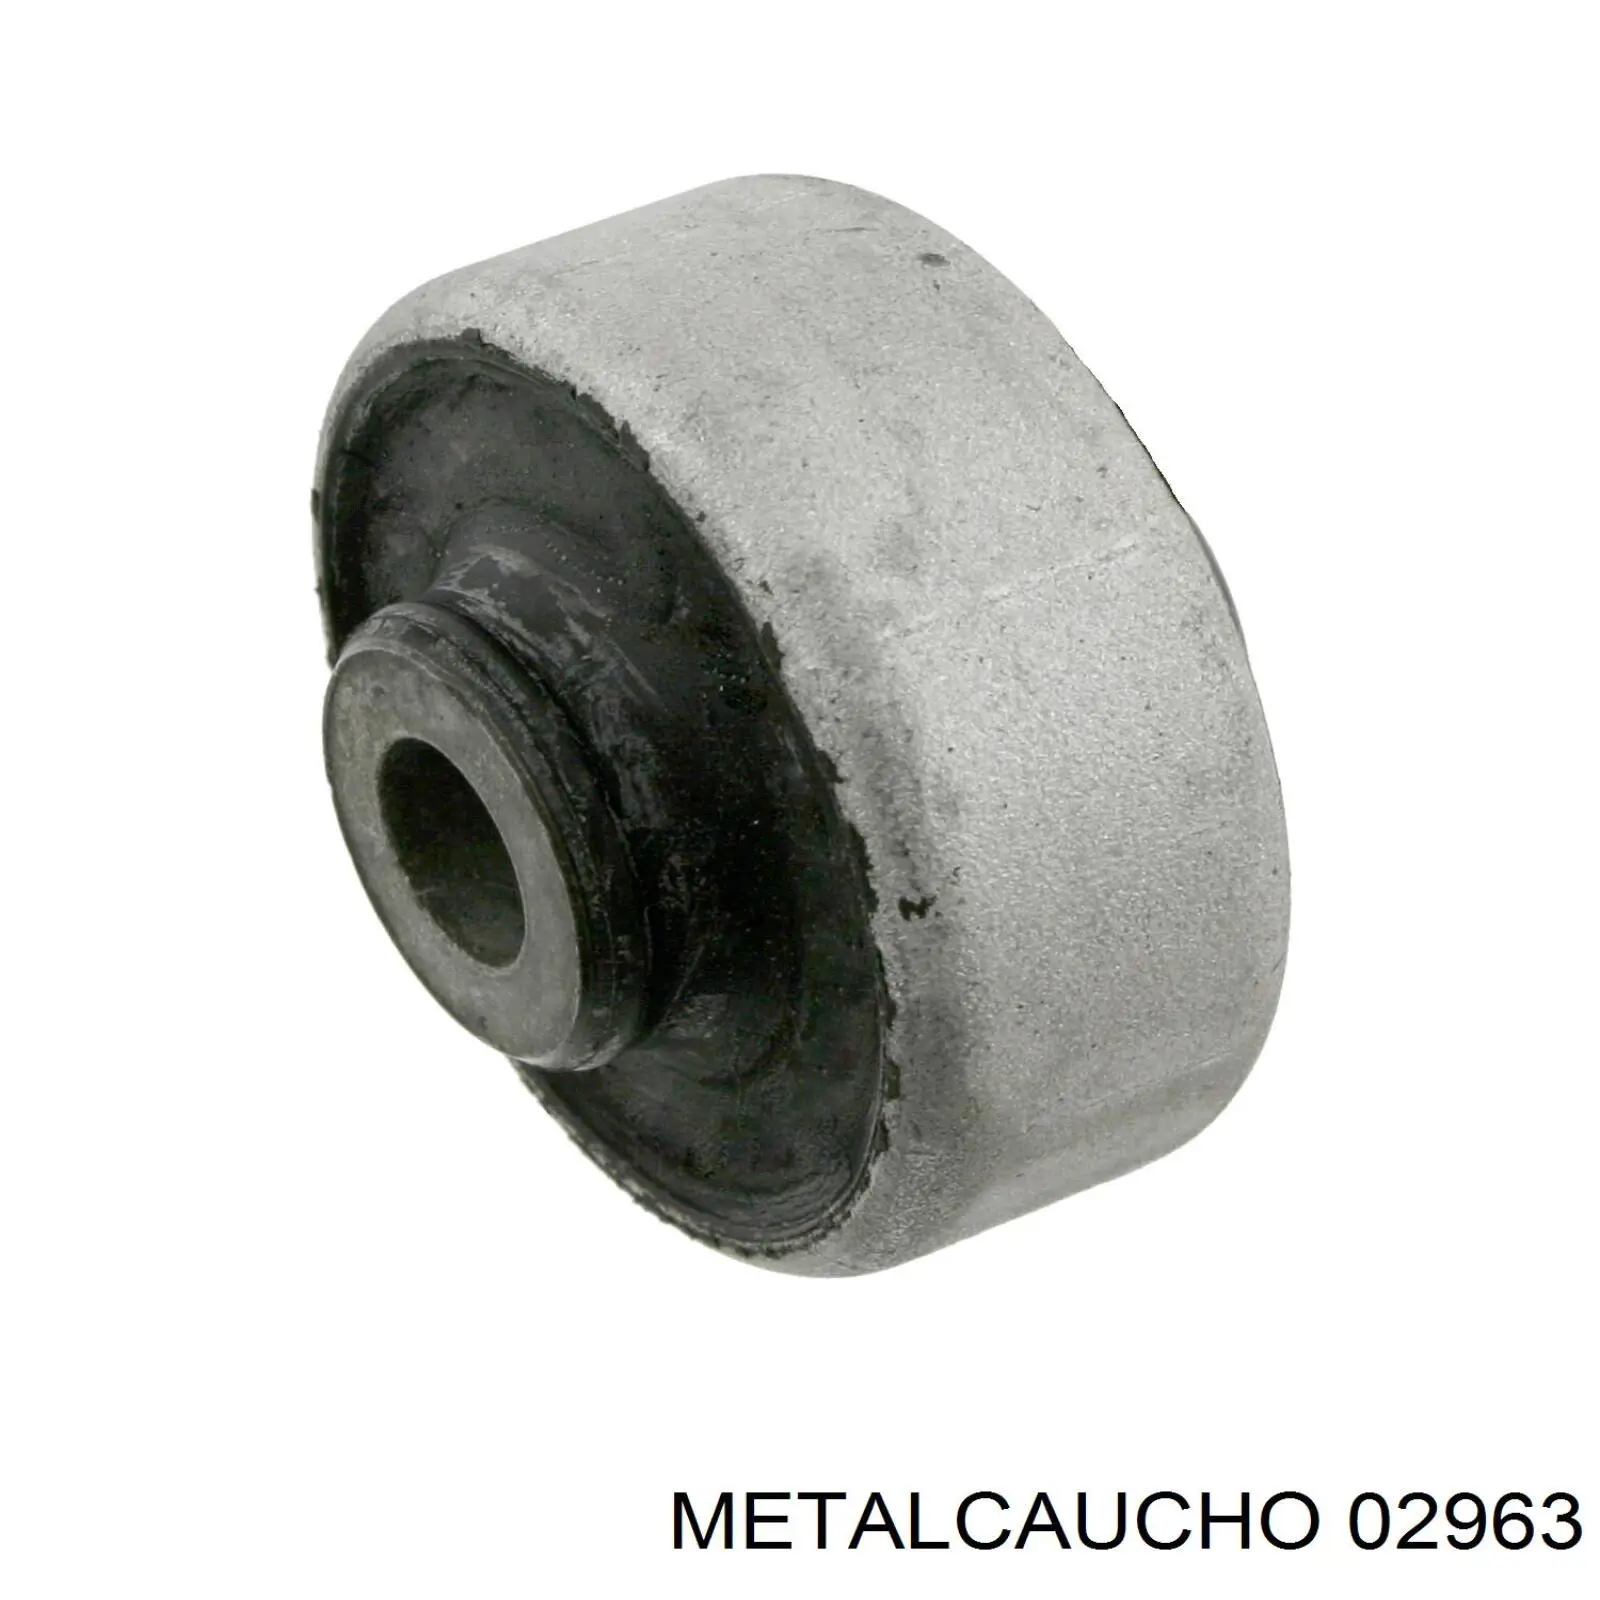 02963 Metalcaucho silentblock de suspensión delantero inferior